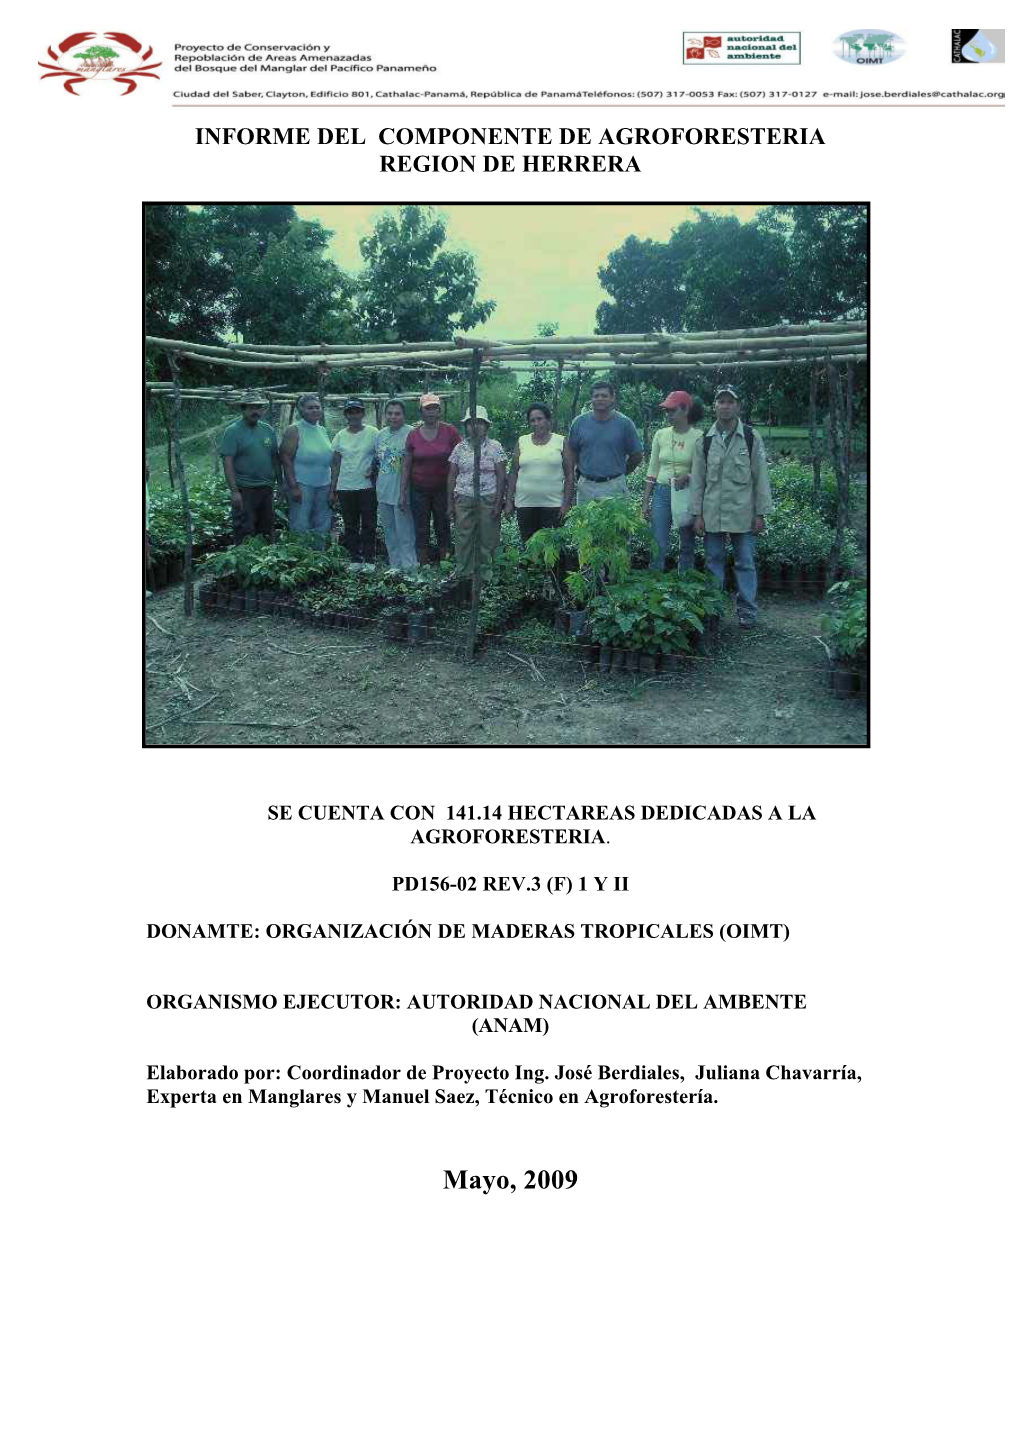 Informe Del Componente De Agroforesteria Region De Herrera